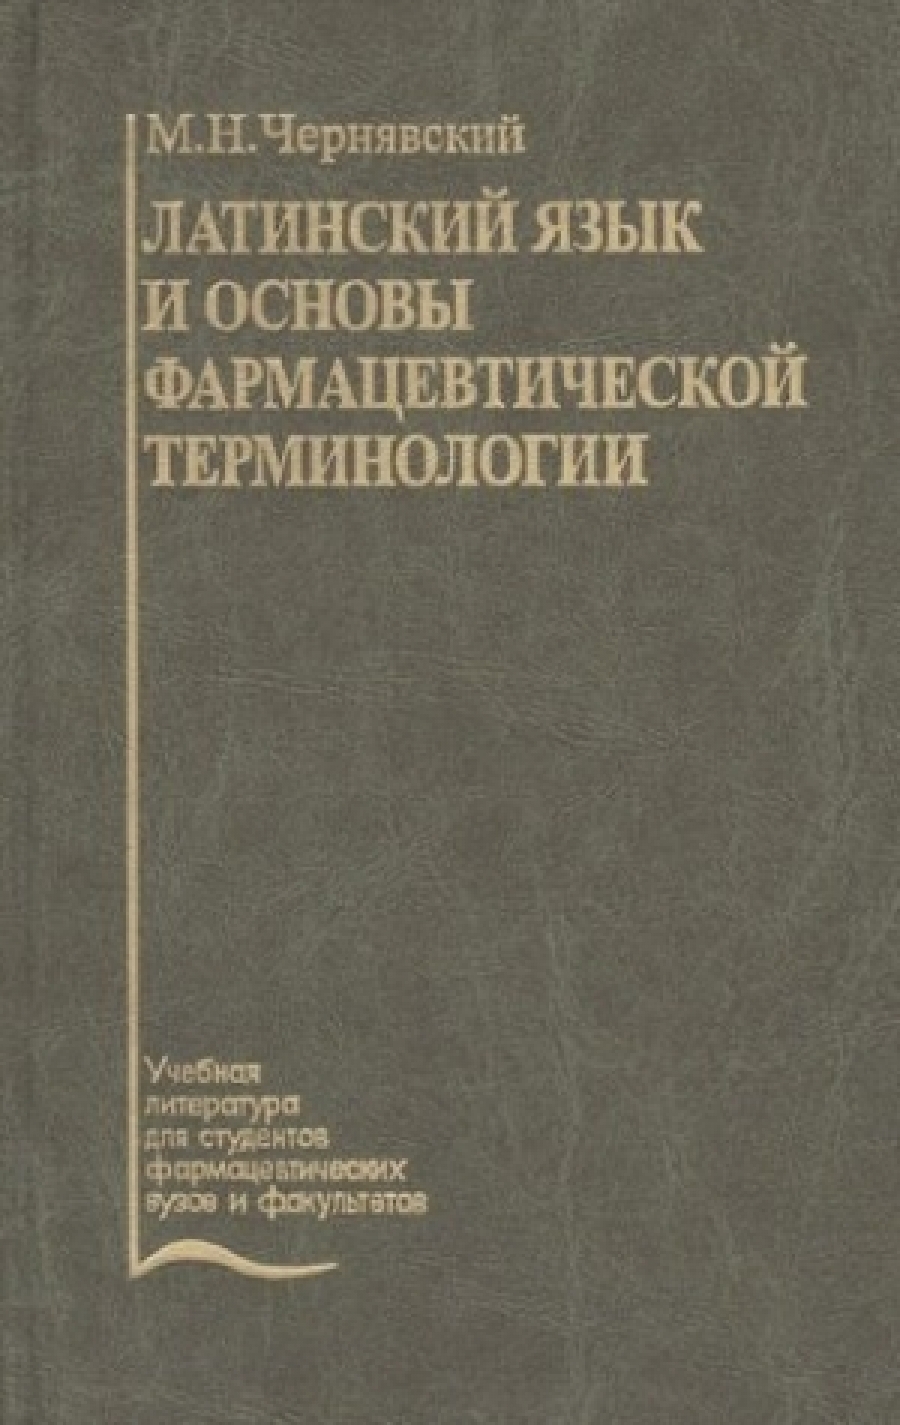 Чернявский М.Н. Латинский язык и основы фармацевтической терминологии (2007). 4-е издание 